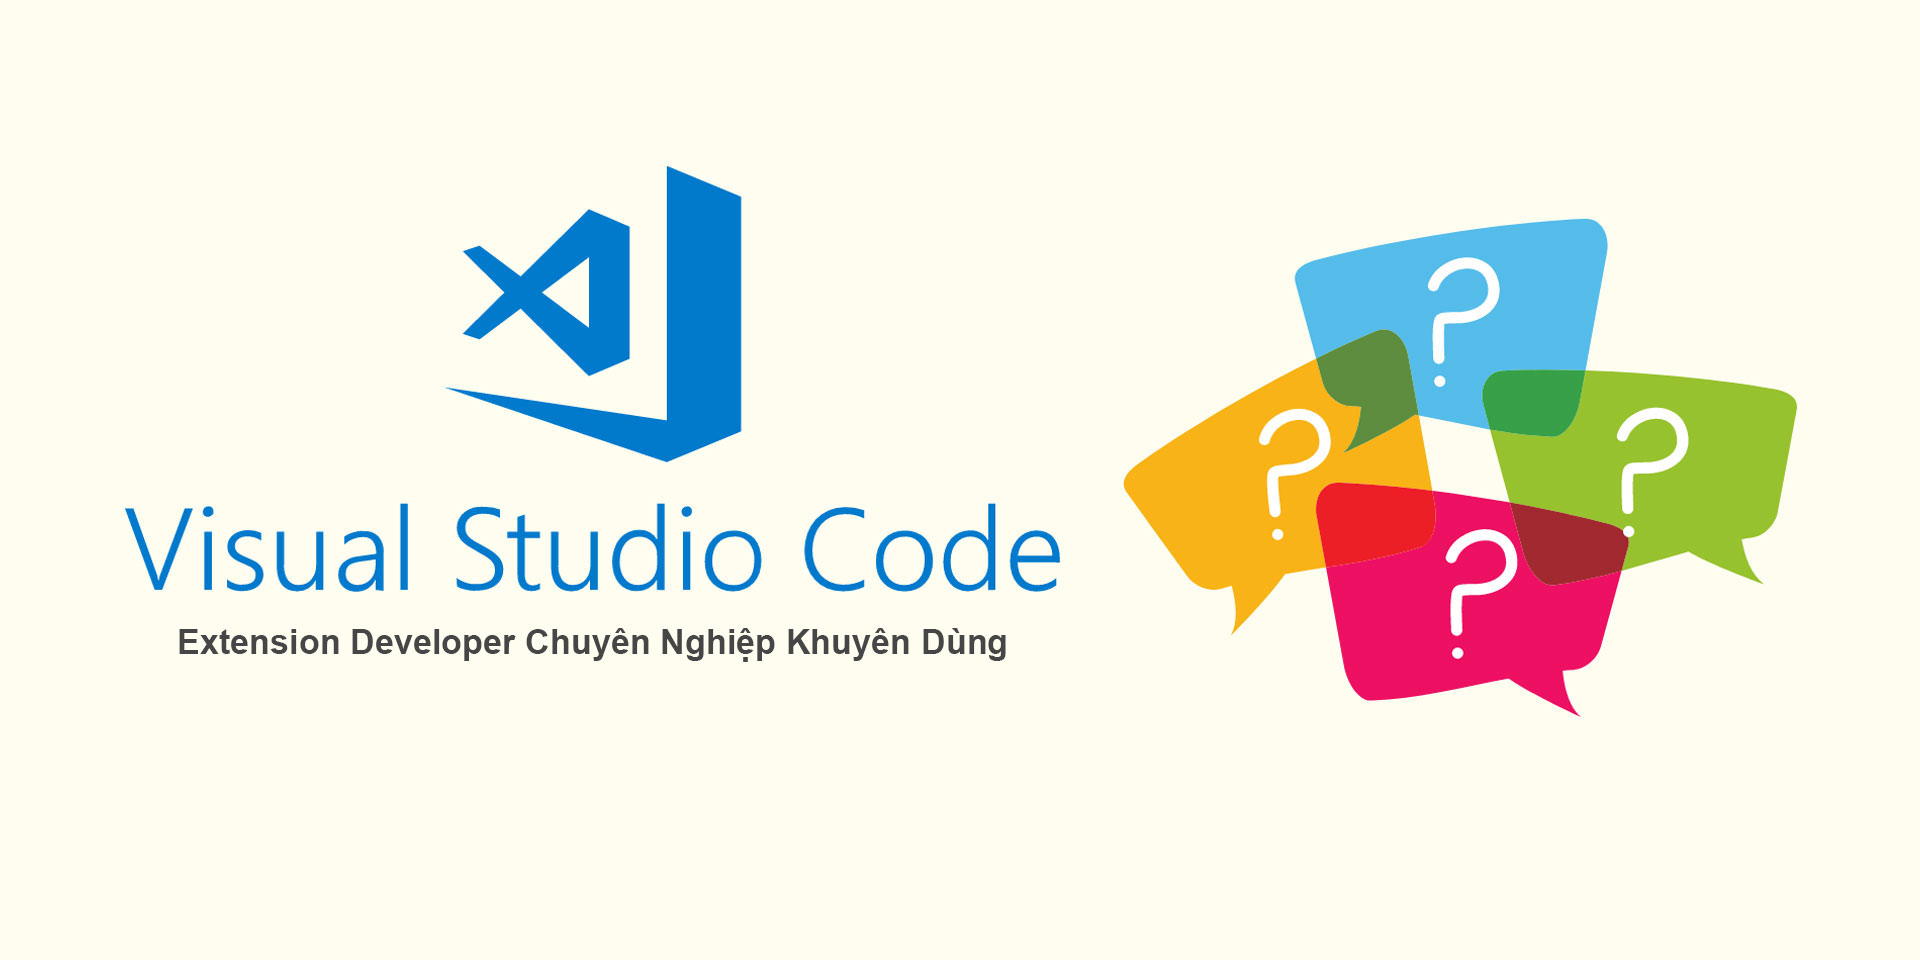 Extension Visual Studio Code Developer chuyên nghiệp khuyên dùng